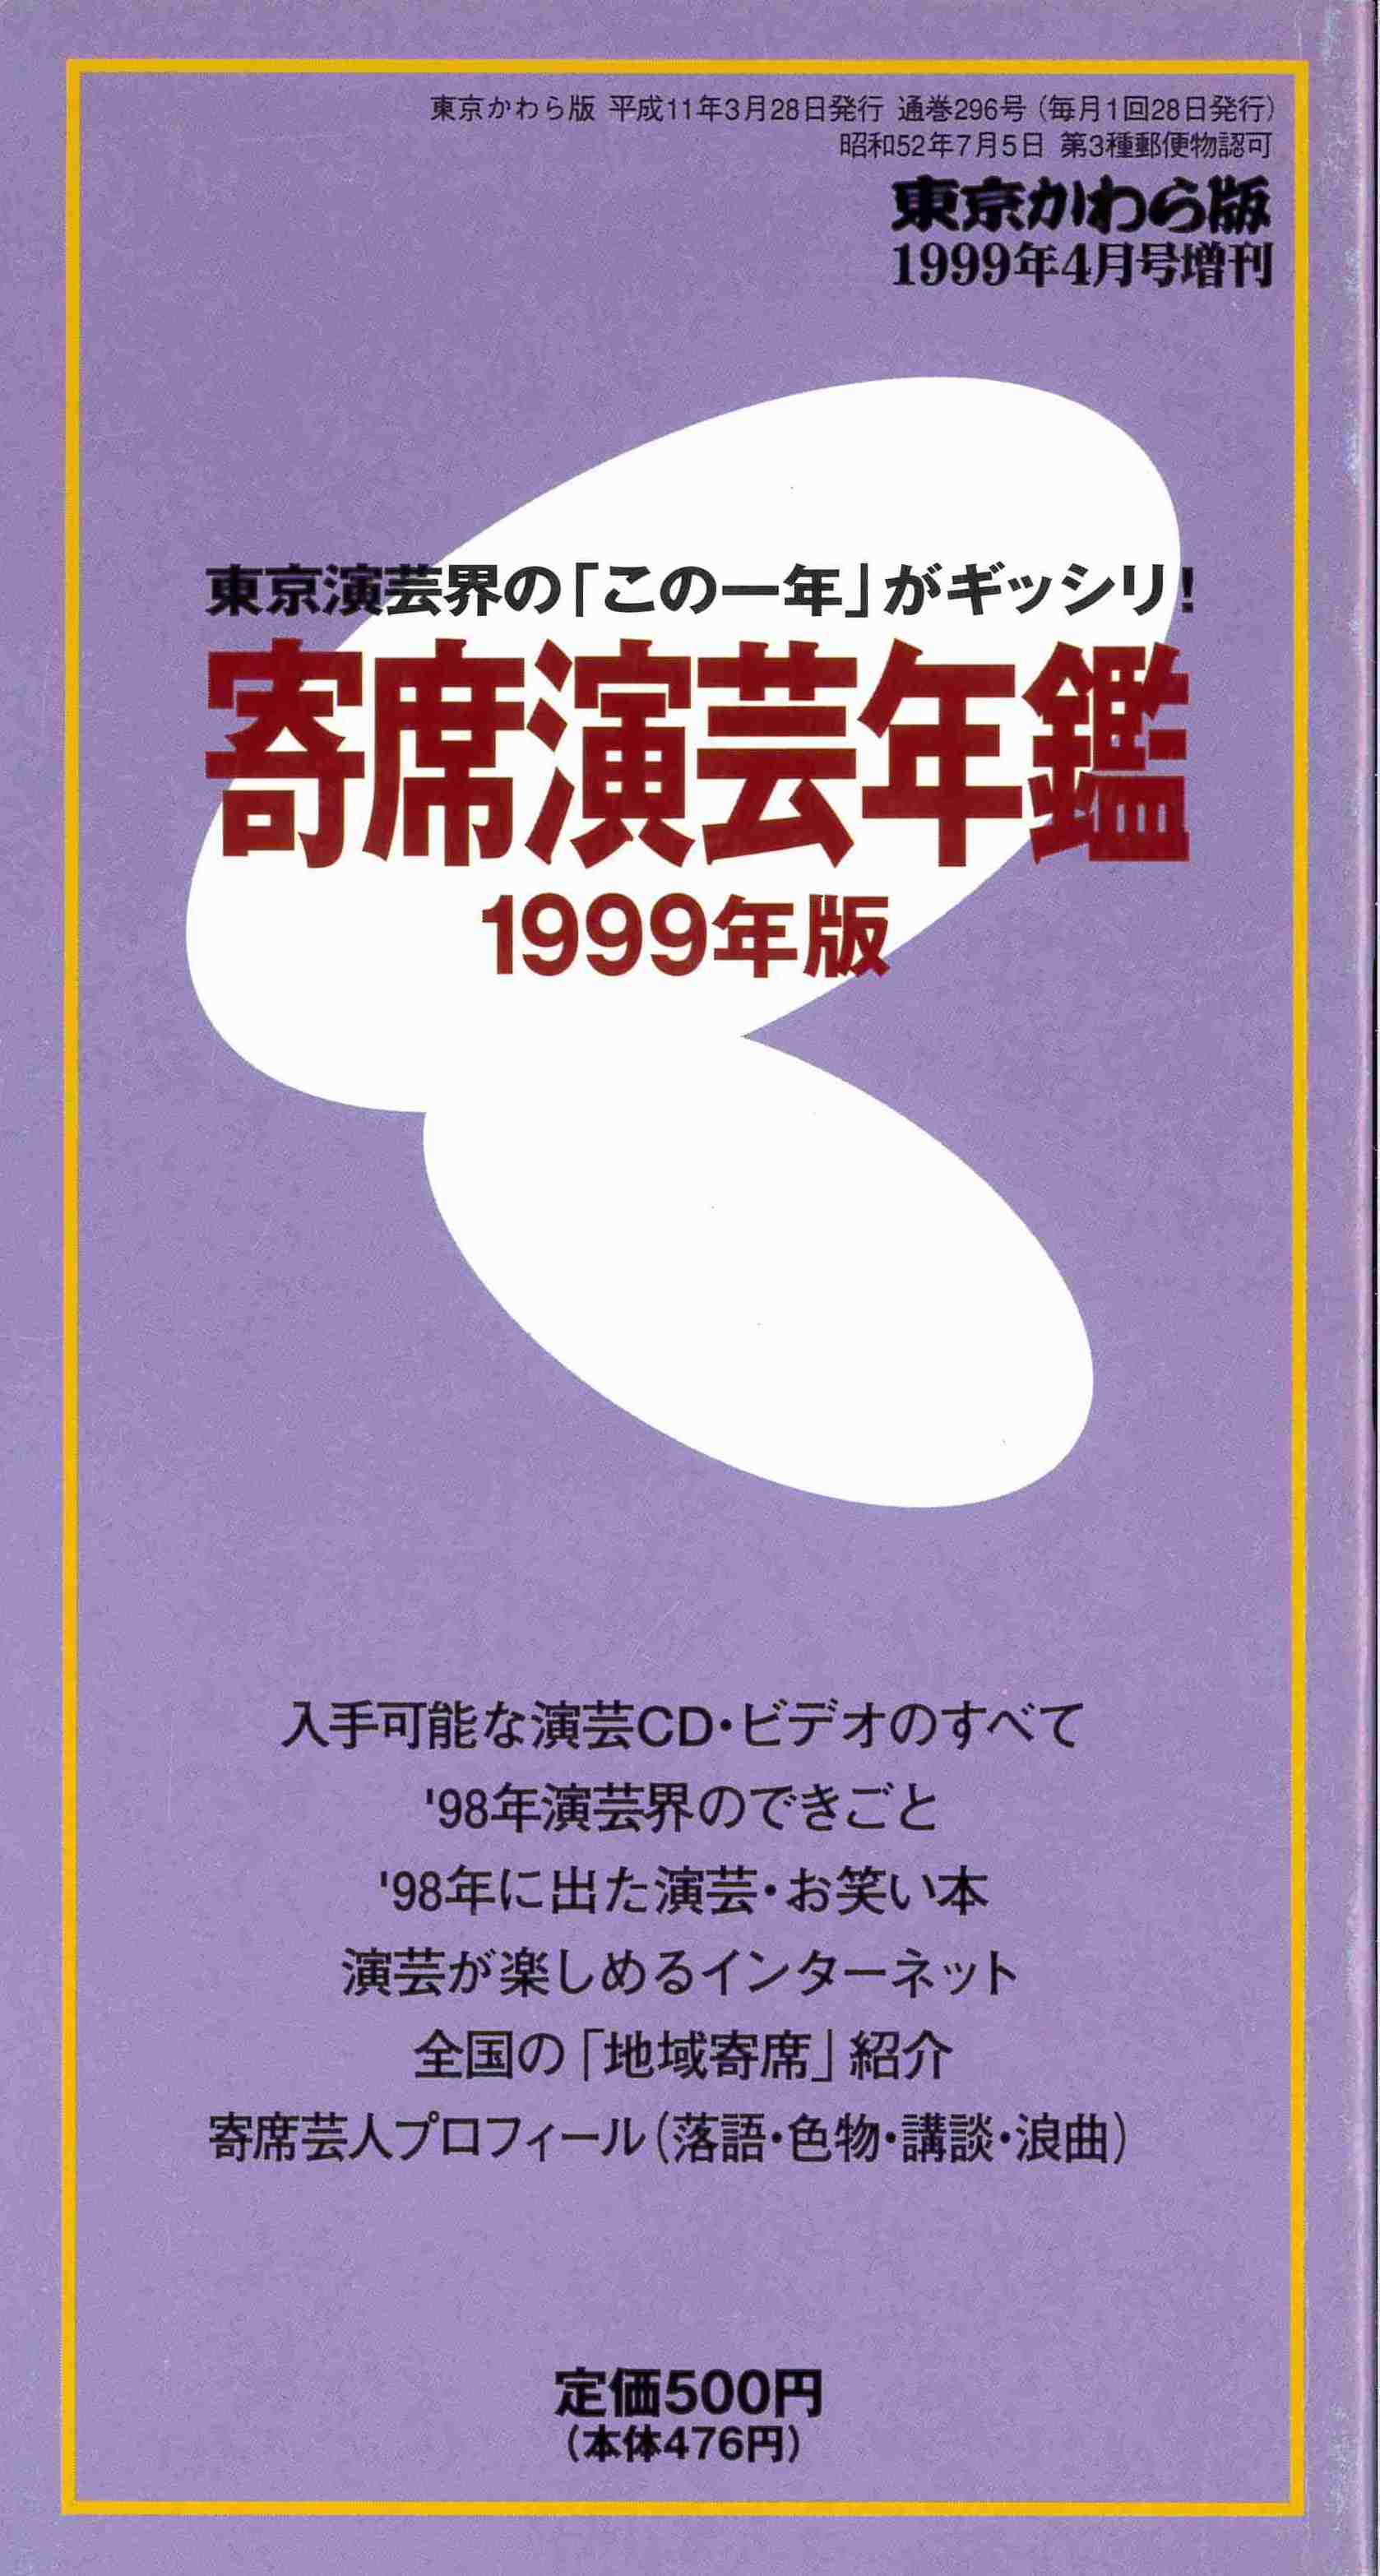 【完売御礼】寄席演芸年鑑 1999年版